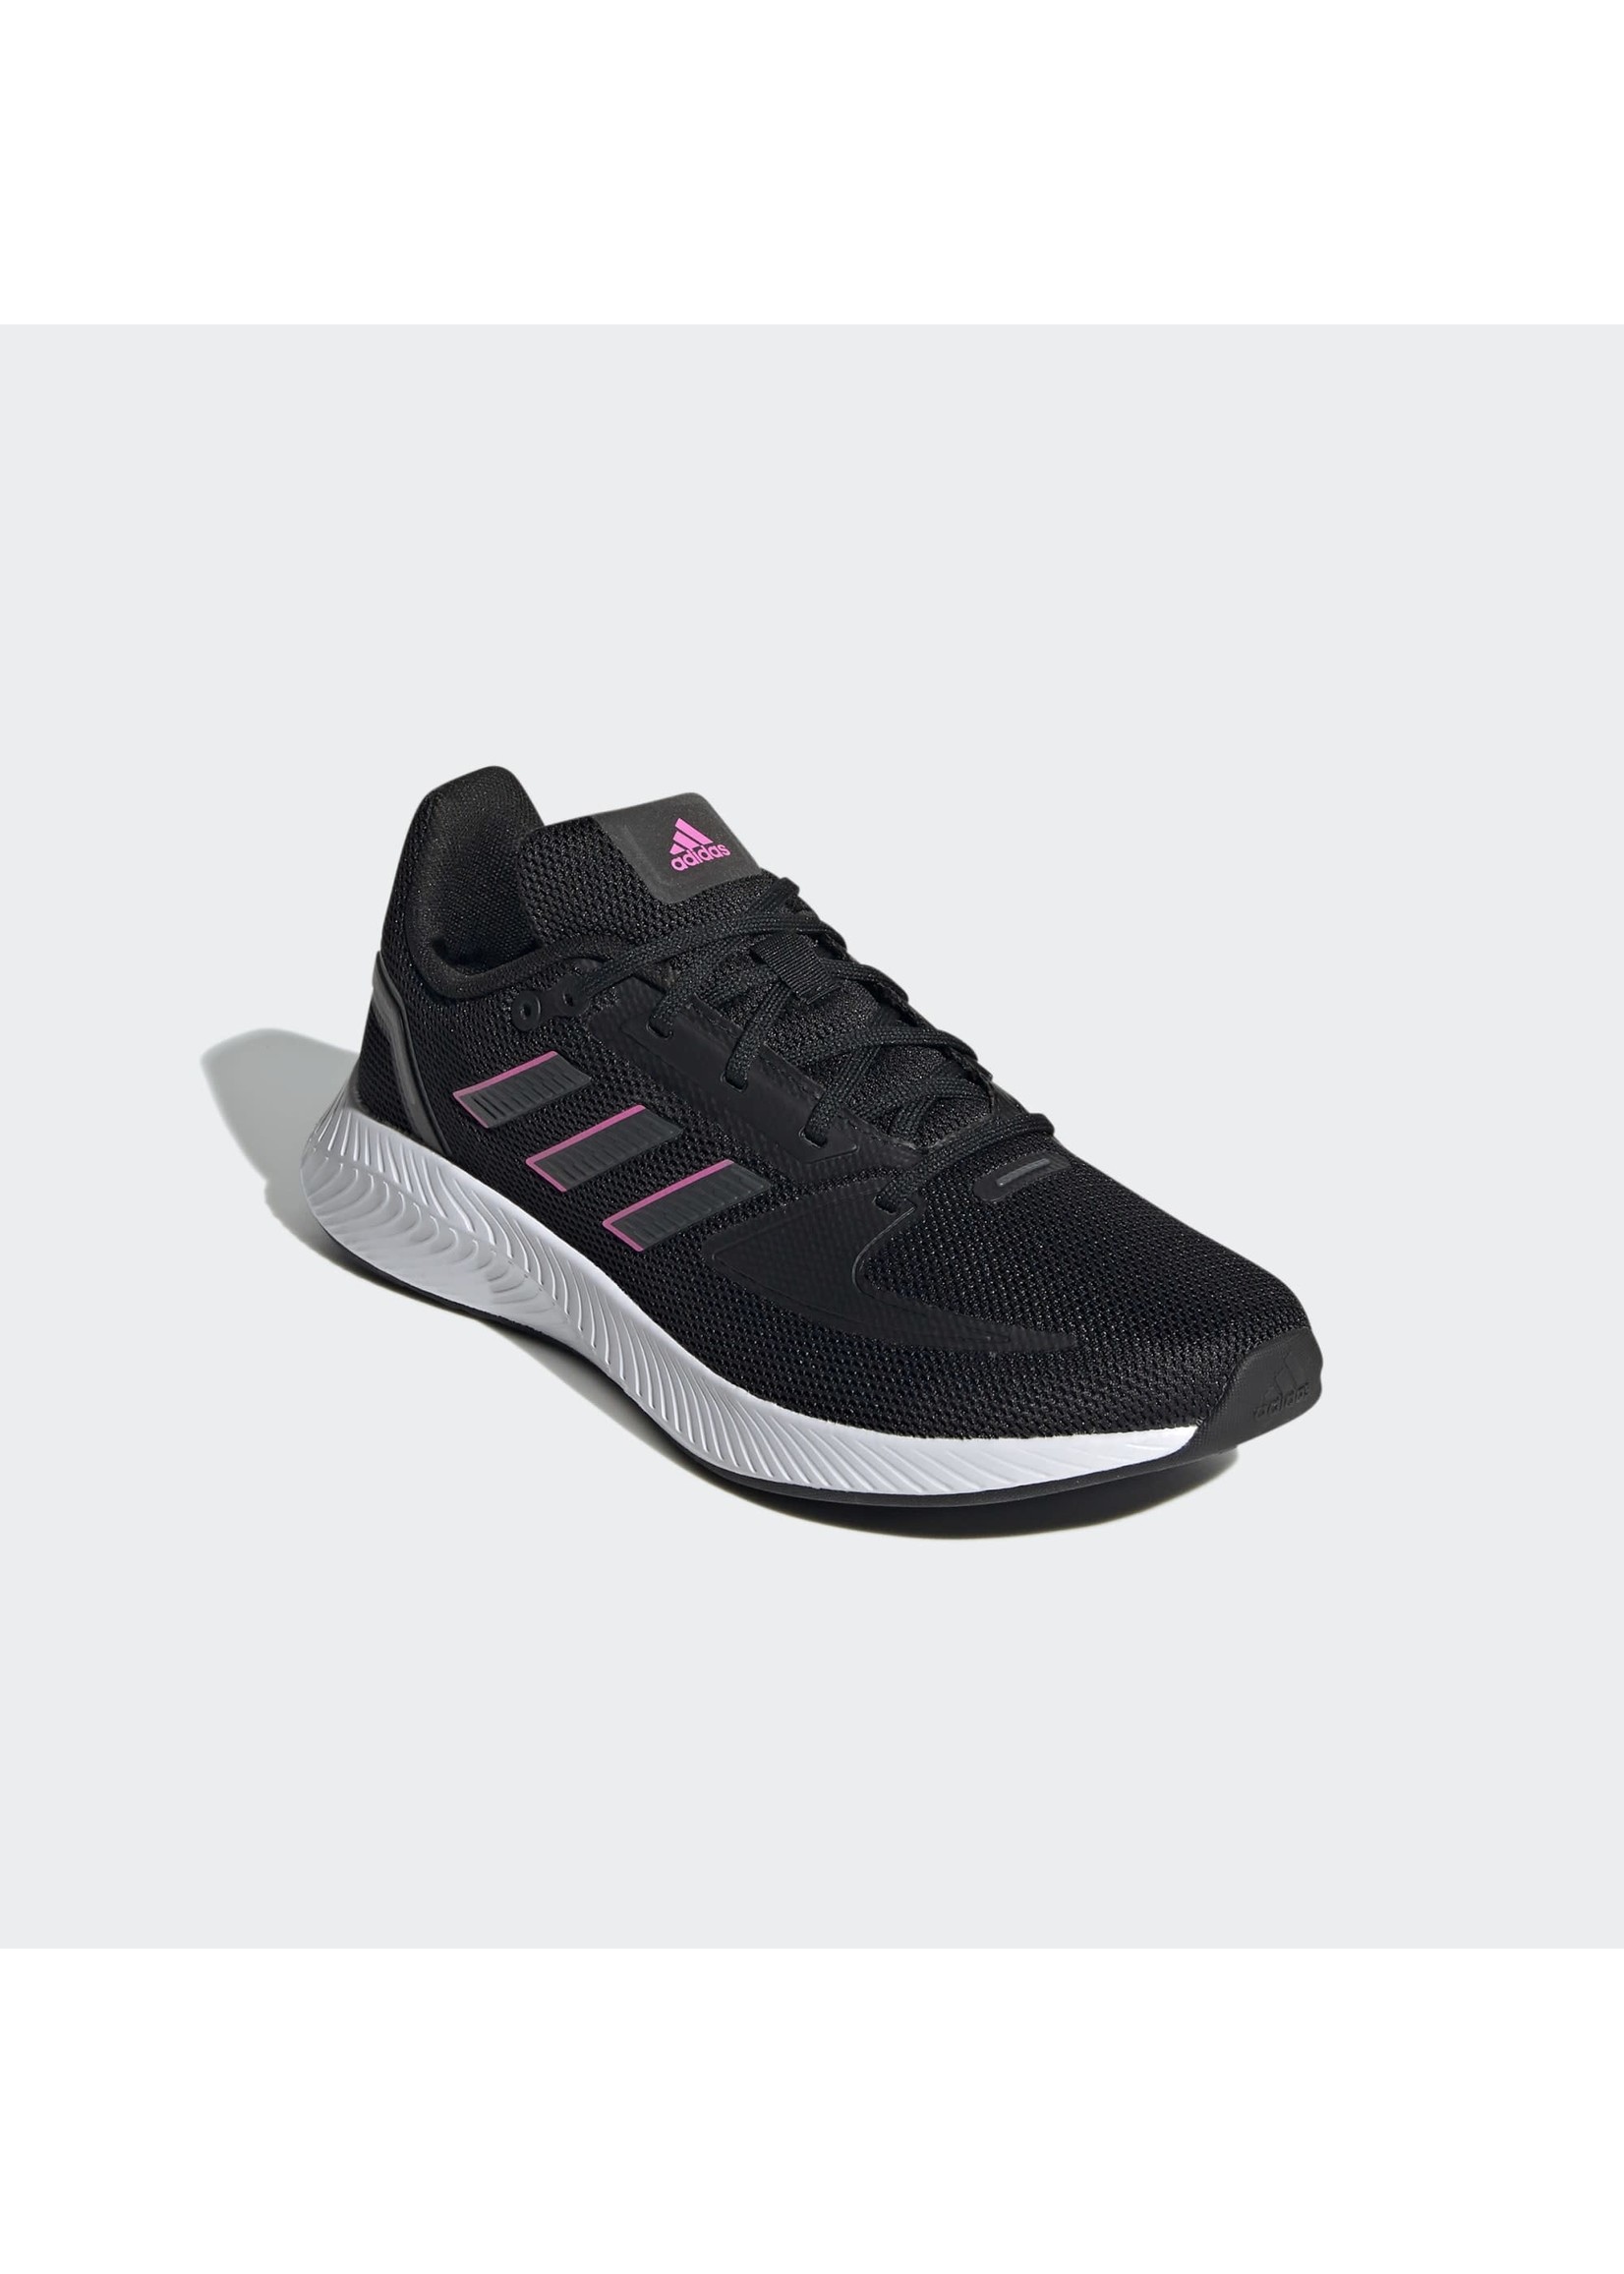 Adidas Adidas Run Falcon Ladies Running Shoe (2021) - Black